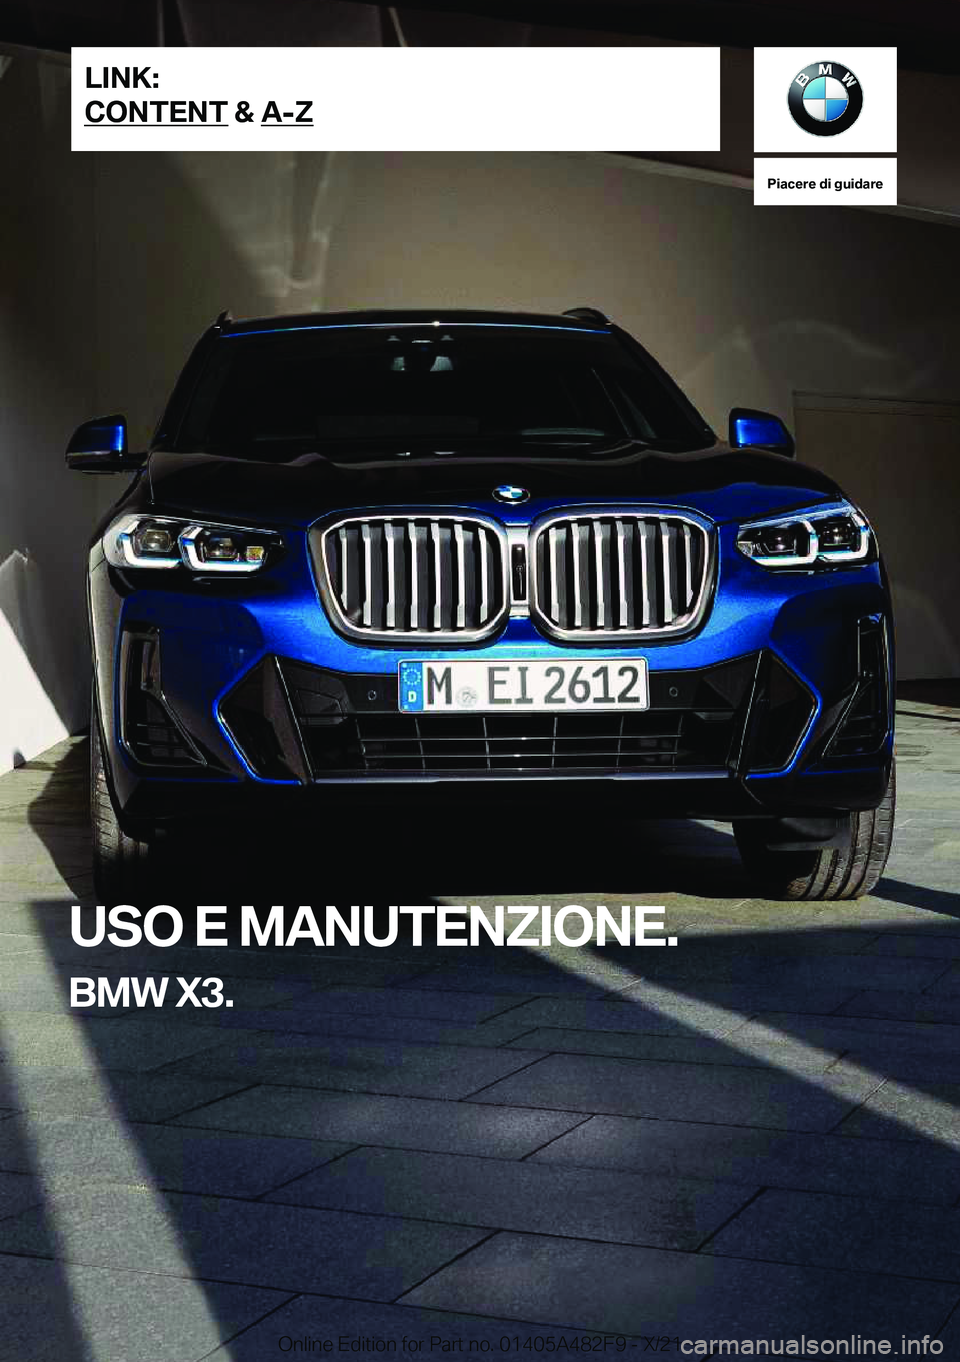 BMW X3 2022  Libretti Di Uso E manutenzione (in Italian) �P�i�a�c�e�r�e��d�i��g�u�i�d�a�r�e
�U�S�O��E��M�A�N�U�T�E�N�Z�I�O�N�E�.
�B�M�W��X�3�.�L�I�N�K�:
�C�O�N�T�E�N�T��&��A�-�Z�O�n�l�i�n�e��E�d�i�t�i�o�n��f�o�r��P�a�r�t��n�o�.��0�1�4�0�5�A�4�8�